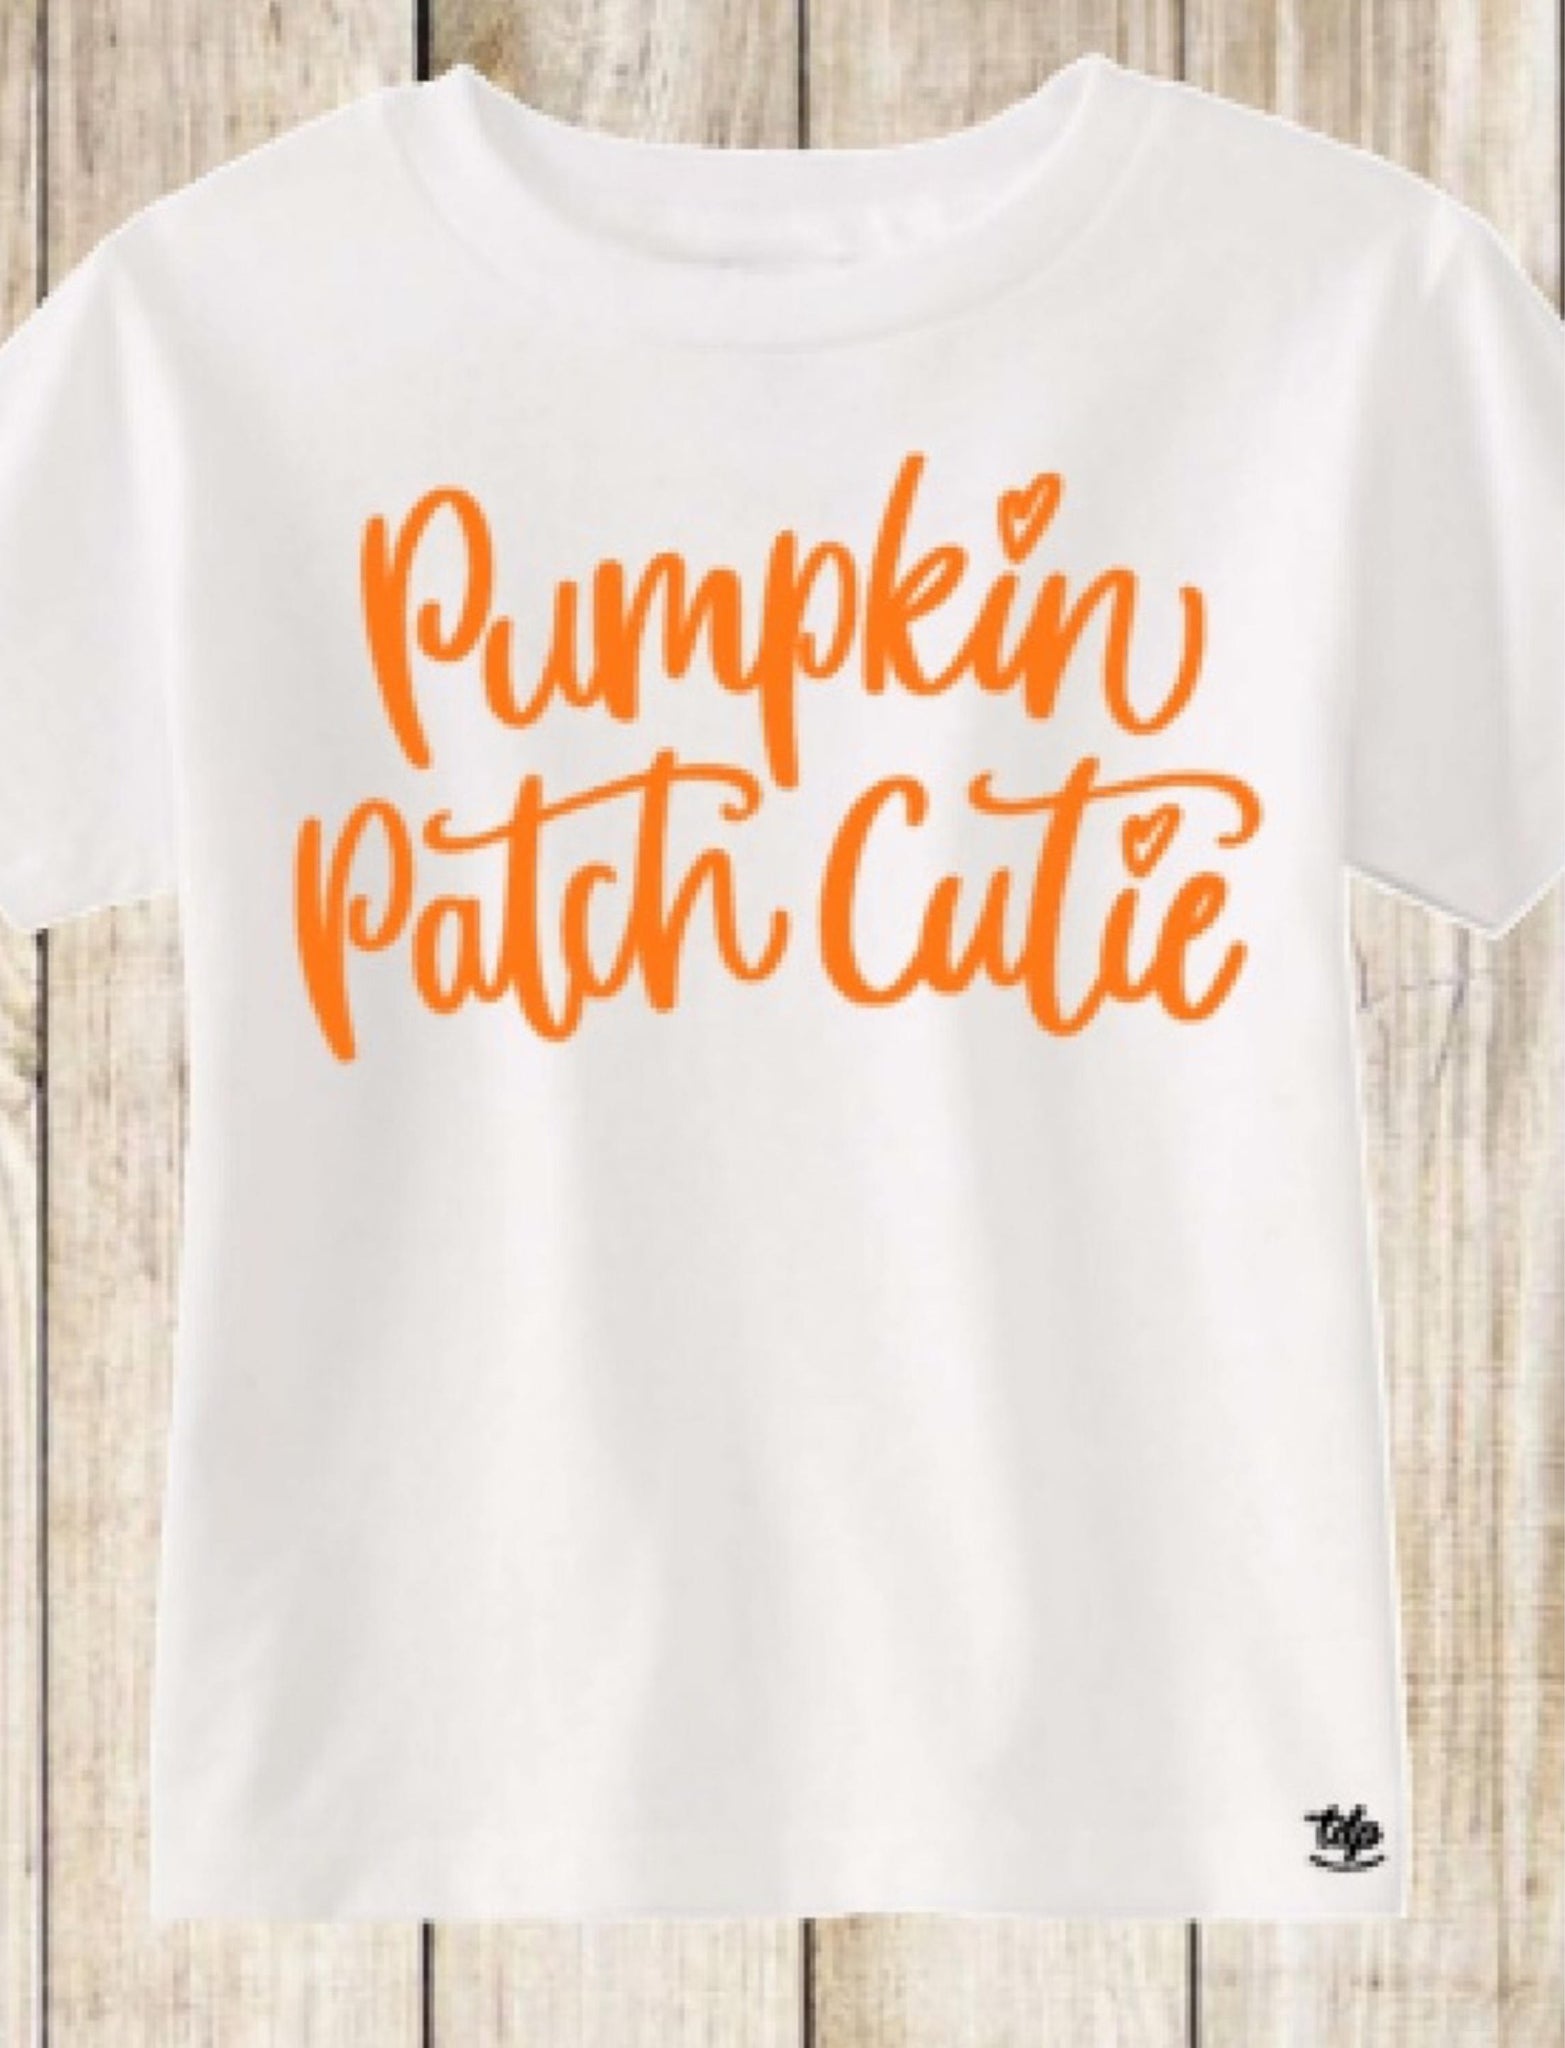 Pumpkin Patch Chtie shirt pumpkins patches fall harvest galloween thanksgiving fall shirt